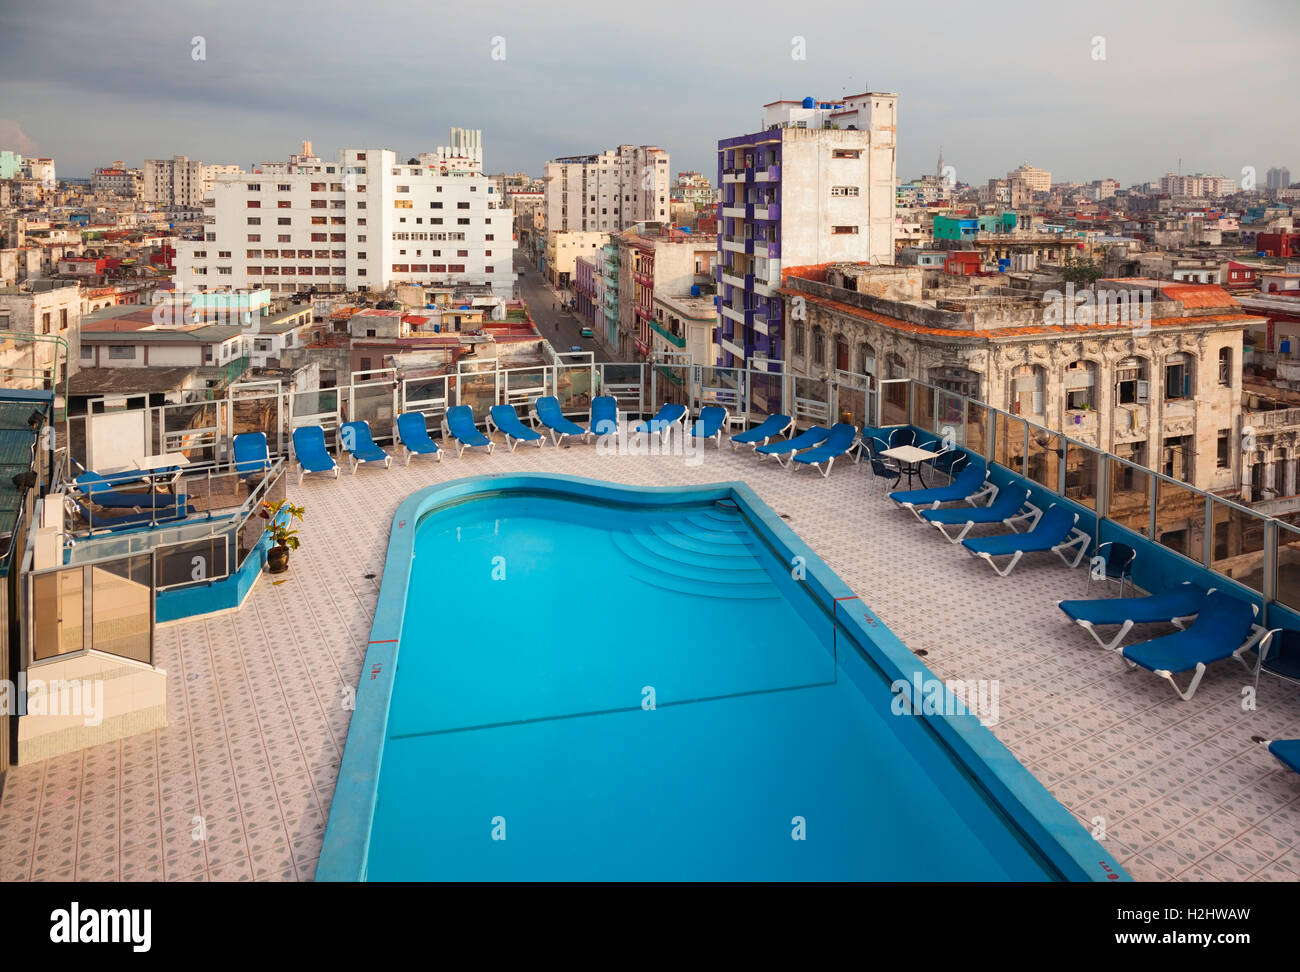 La piscine sur le toit de l'hôtel Deauville dans le centre de La Havane, Cuba. Banque D'Images